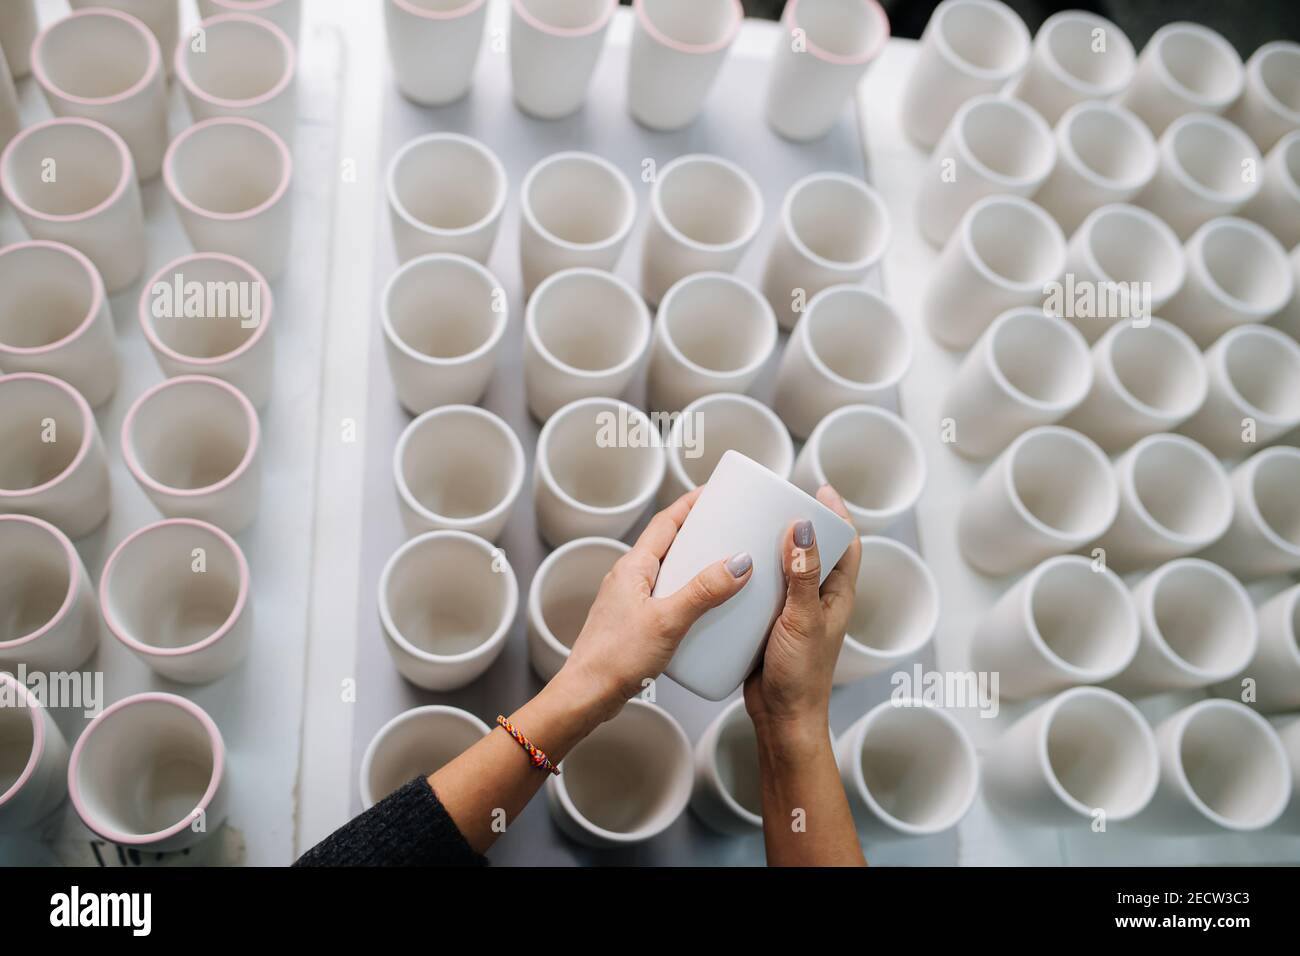 Femme mains tenant la tasse au-dessus des rangées de tasses vierges sur une table dans une salle de stockage Banque D'Images